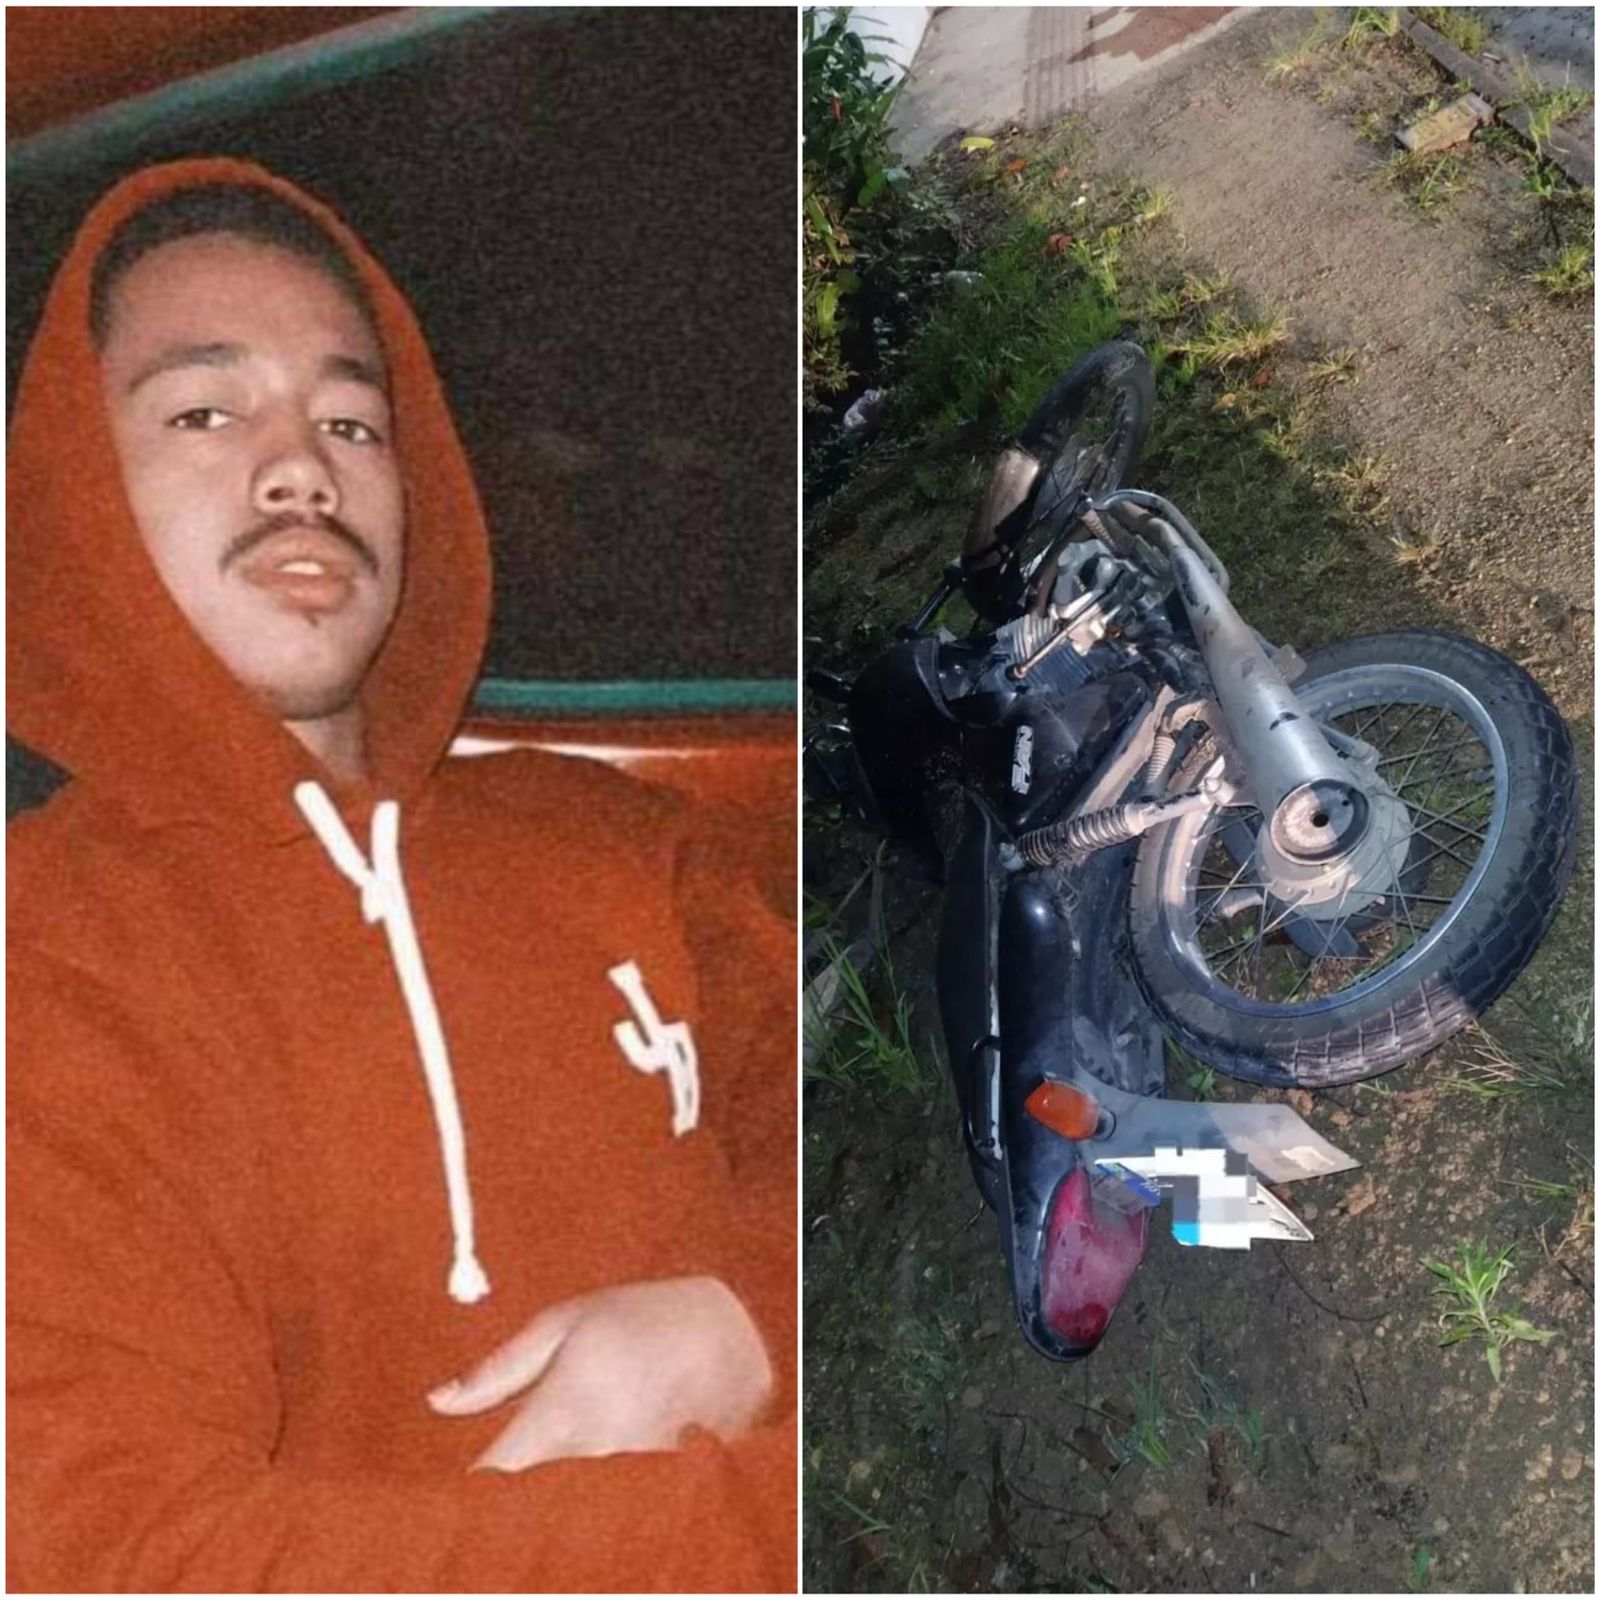 Jovem morre ao cair de motocicleta em trilha no Norte Catarinense